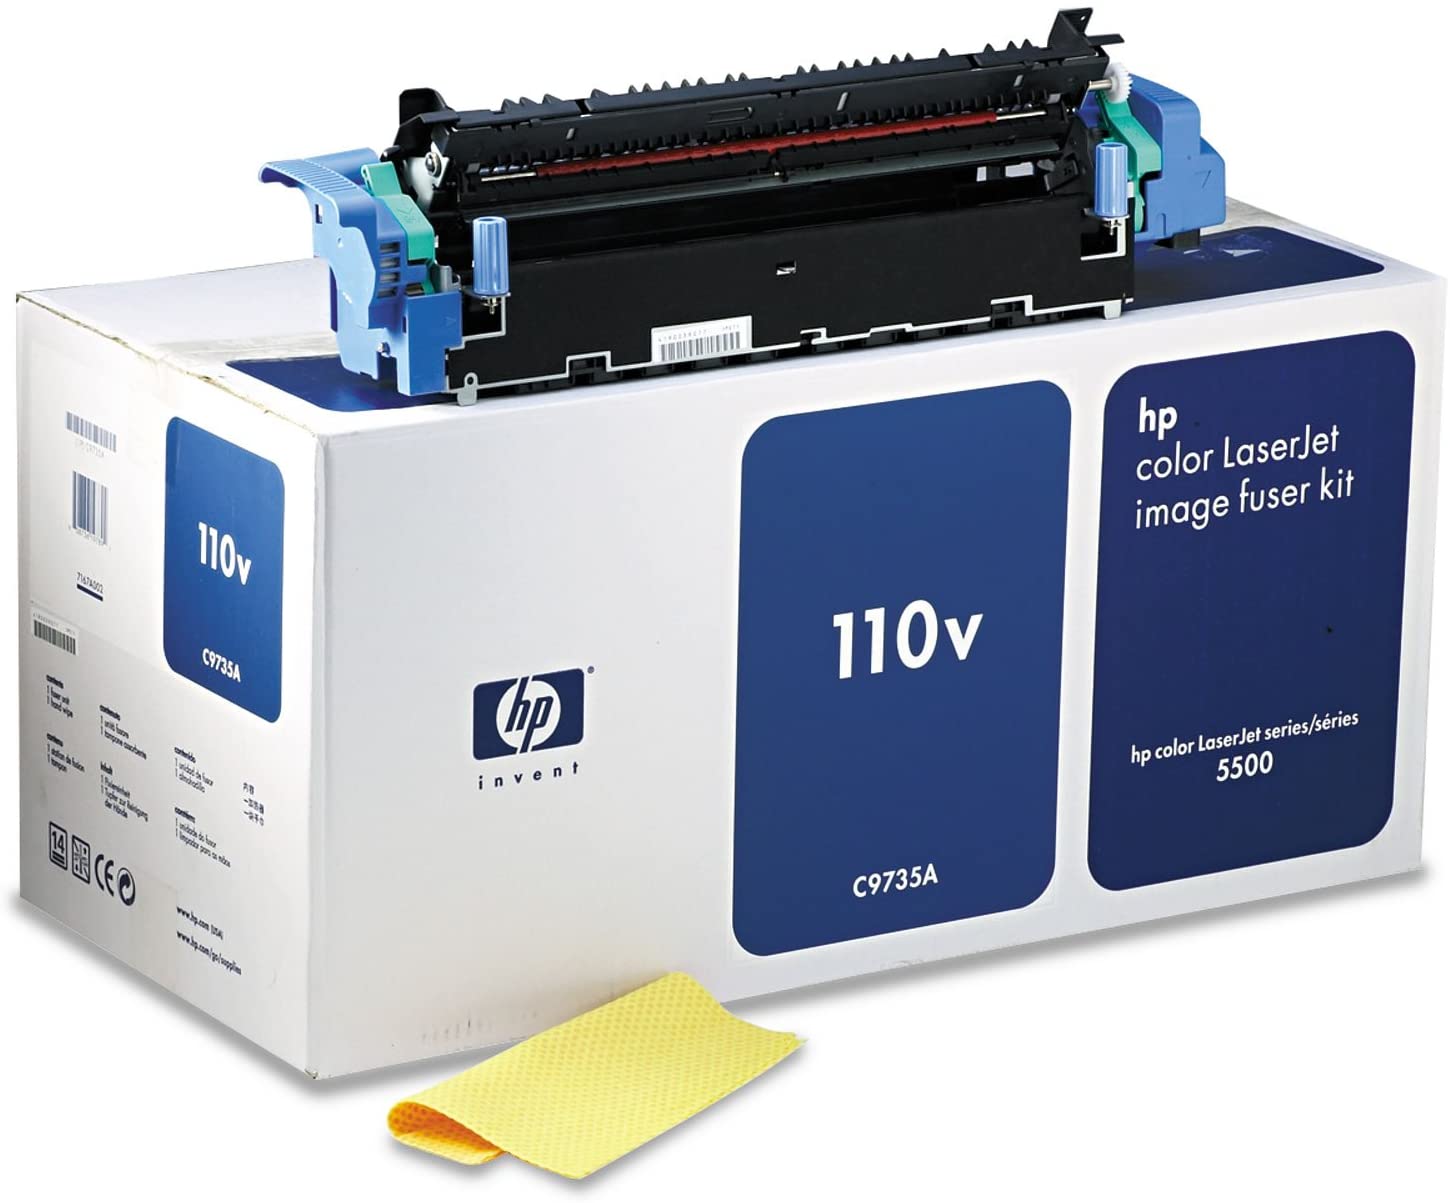 HP Color LaserJet  110V Image Fuser Kit (C9735A)